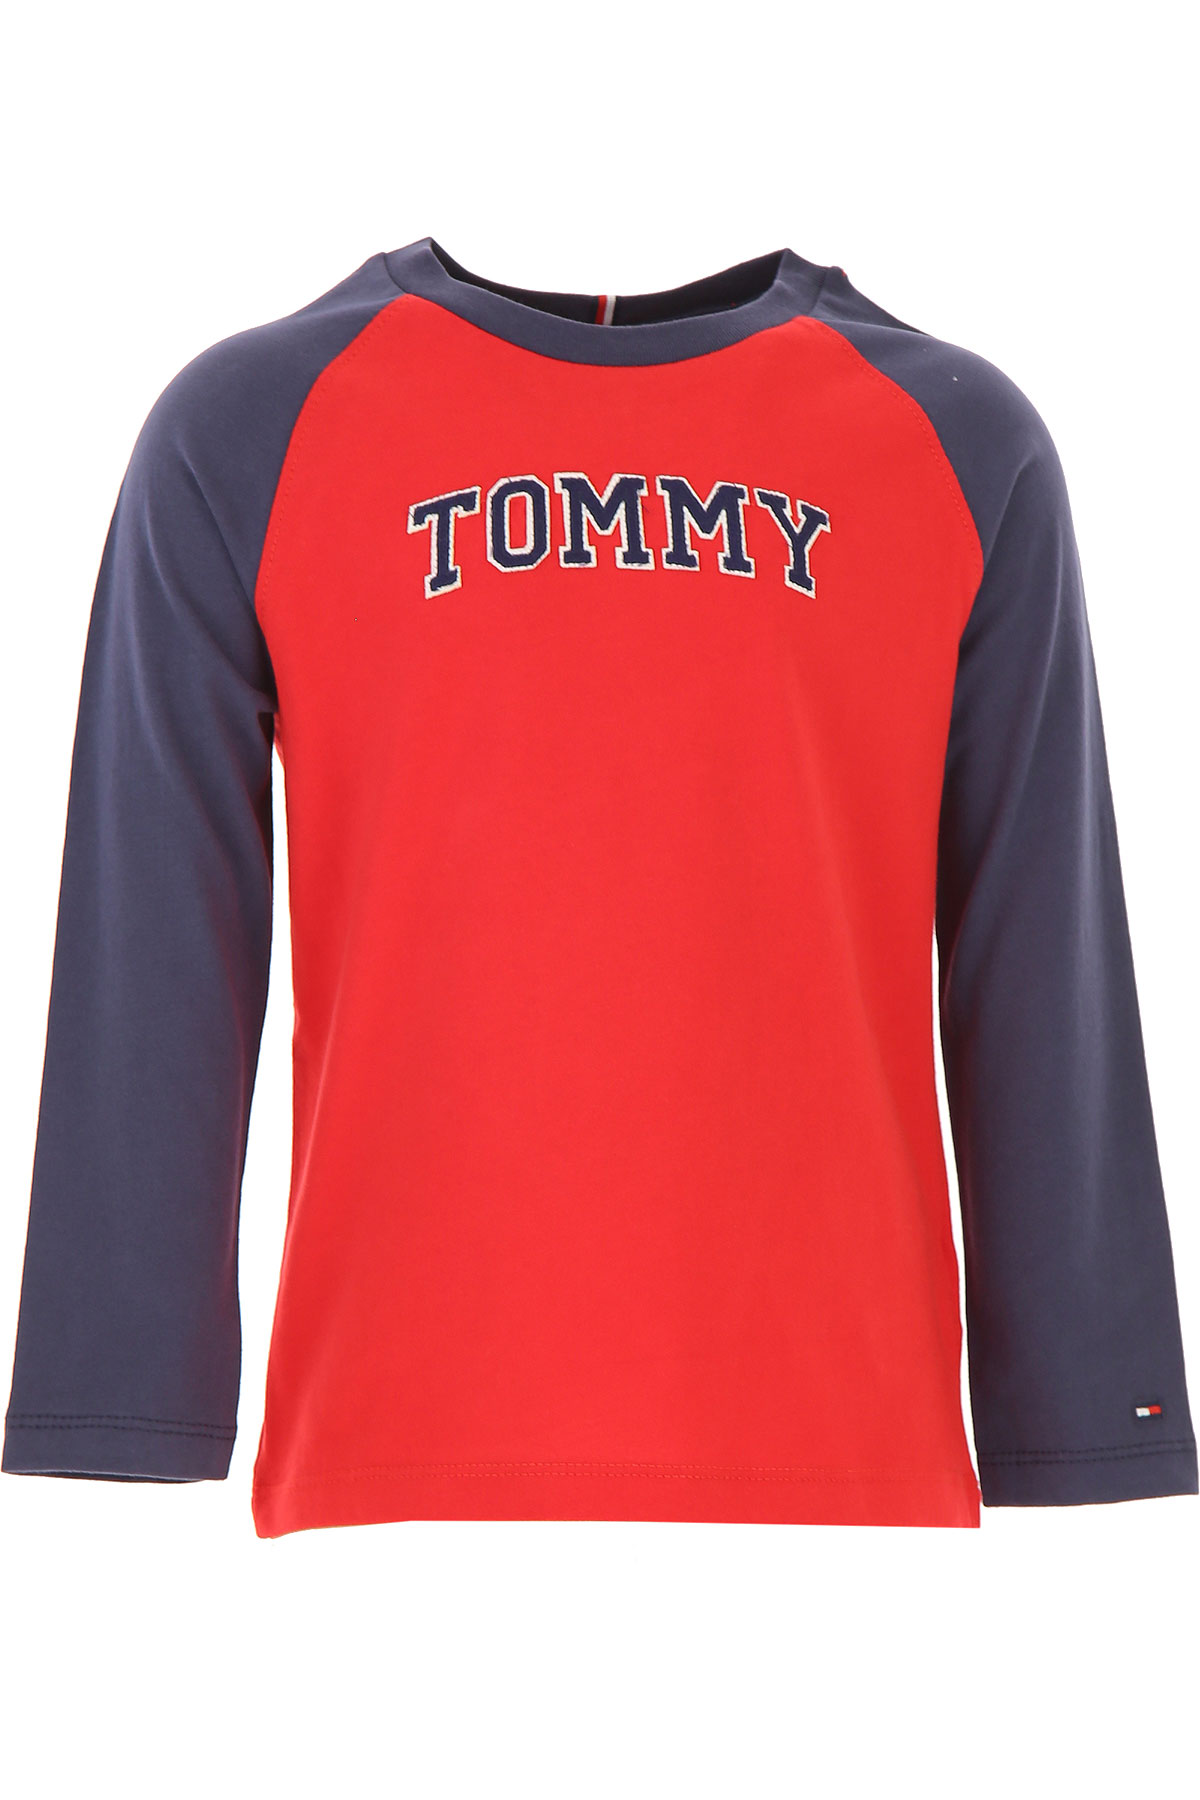 Tommy Hilfiger Kinder T-Shirt für Jungen Günstig im Sale, Rot, Baumwolle, 2017, 6Y 8Y